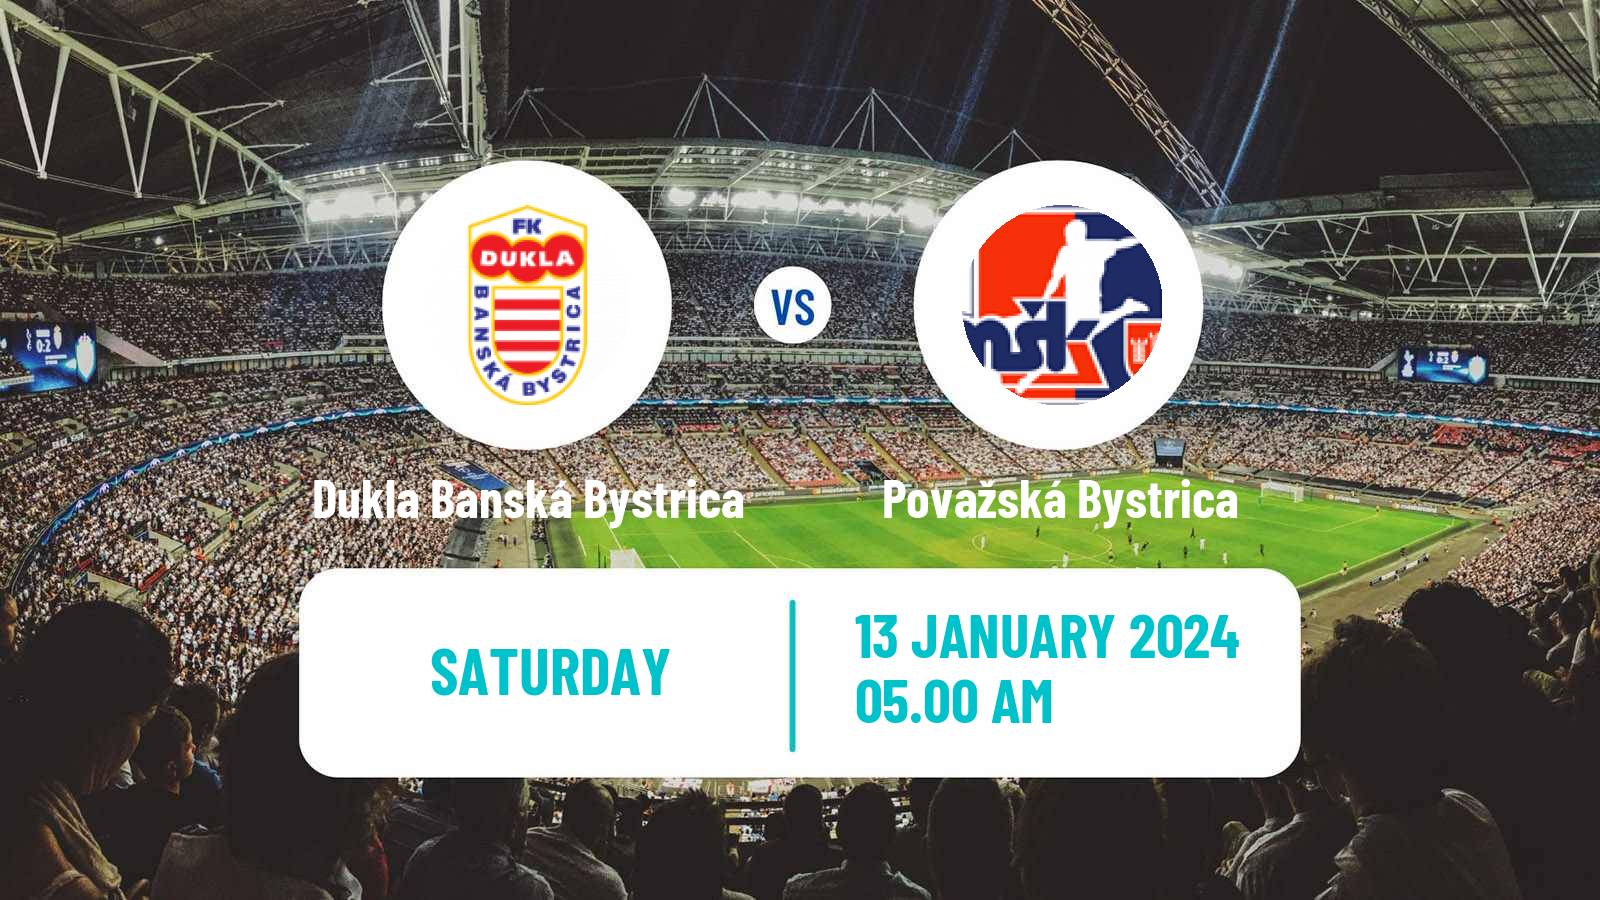 Soccer Club Friendly Dukla Banská Bystrica - Považská Bystrica